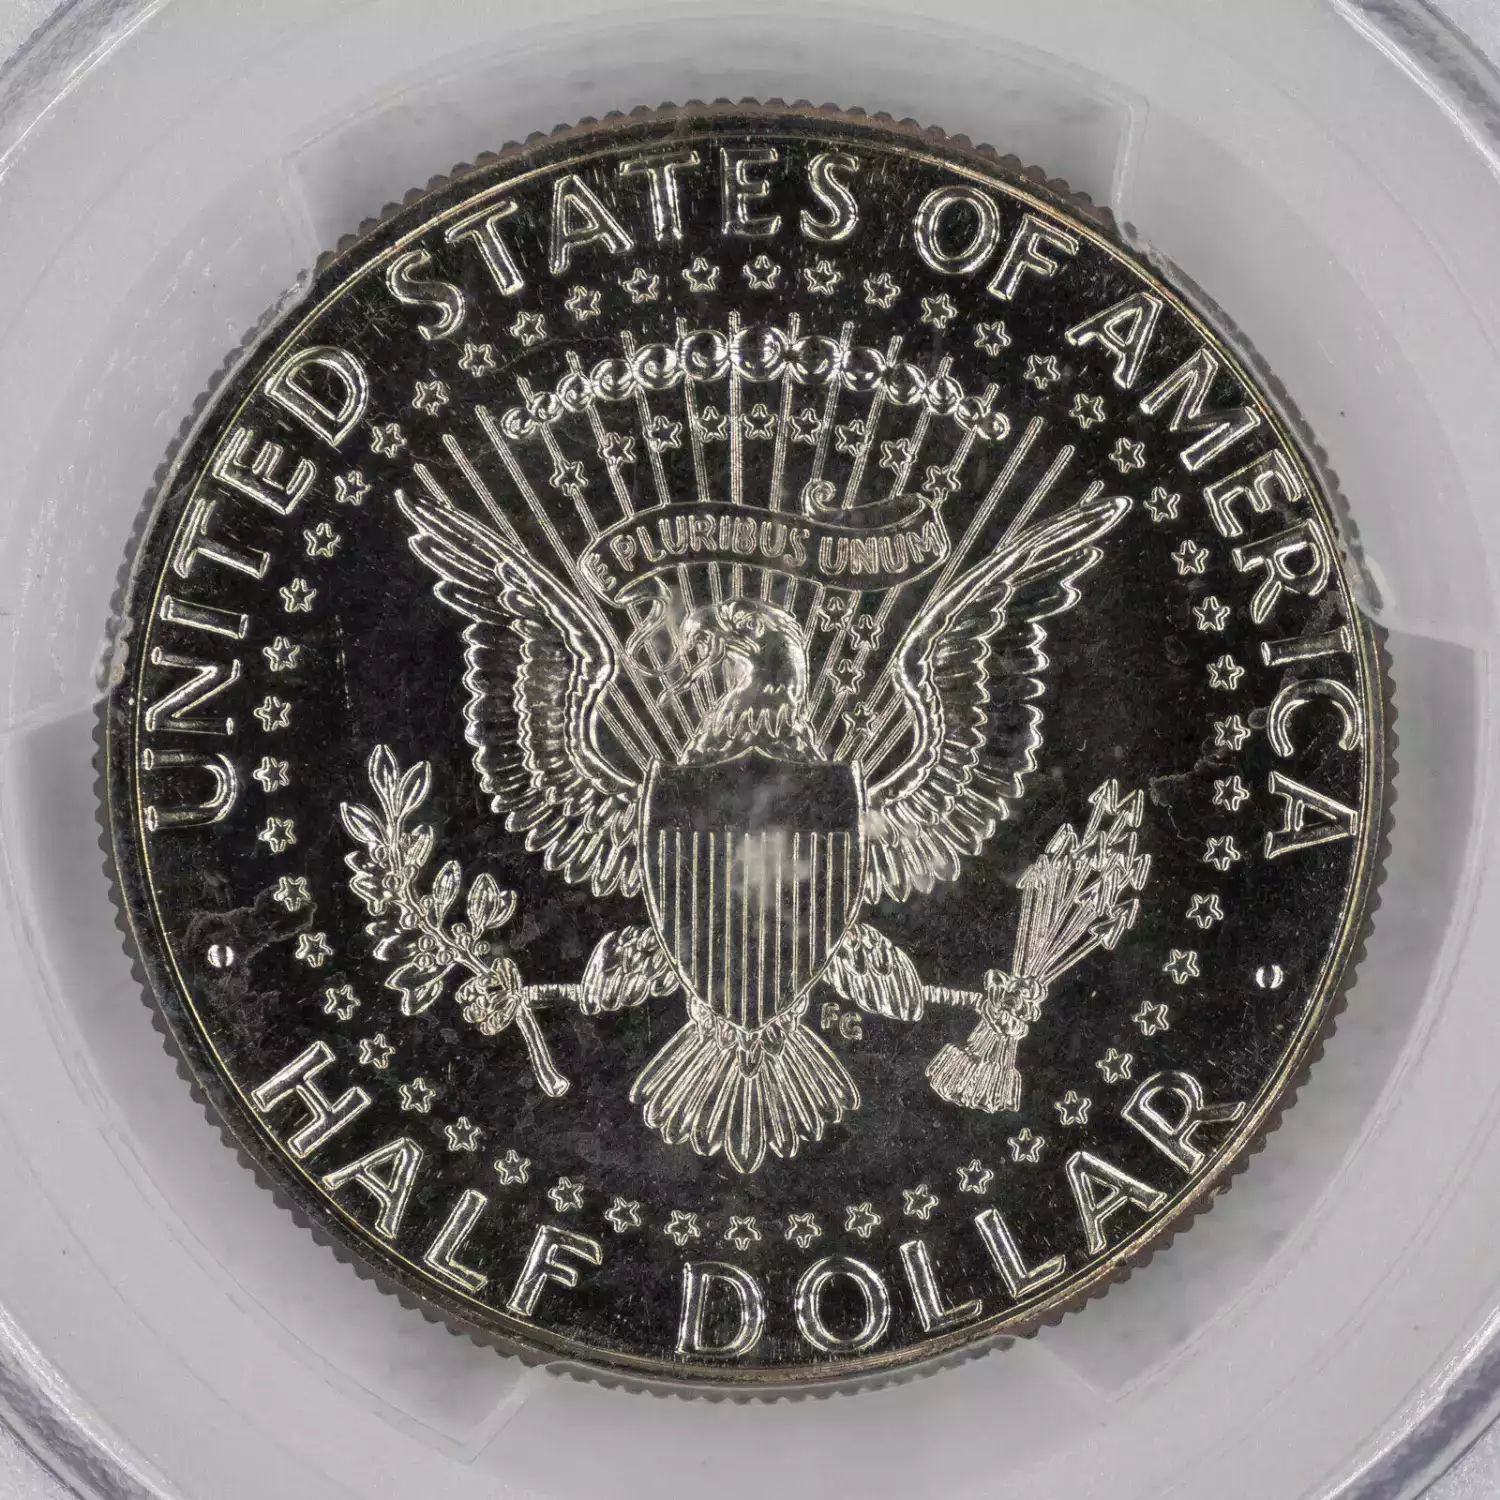 Half Dollars---Kennedy 1971-Present -Copper-Nickel- 0.5 Dollar (3)